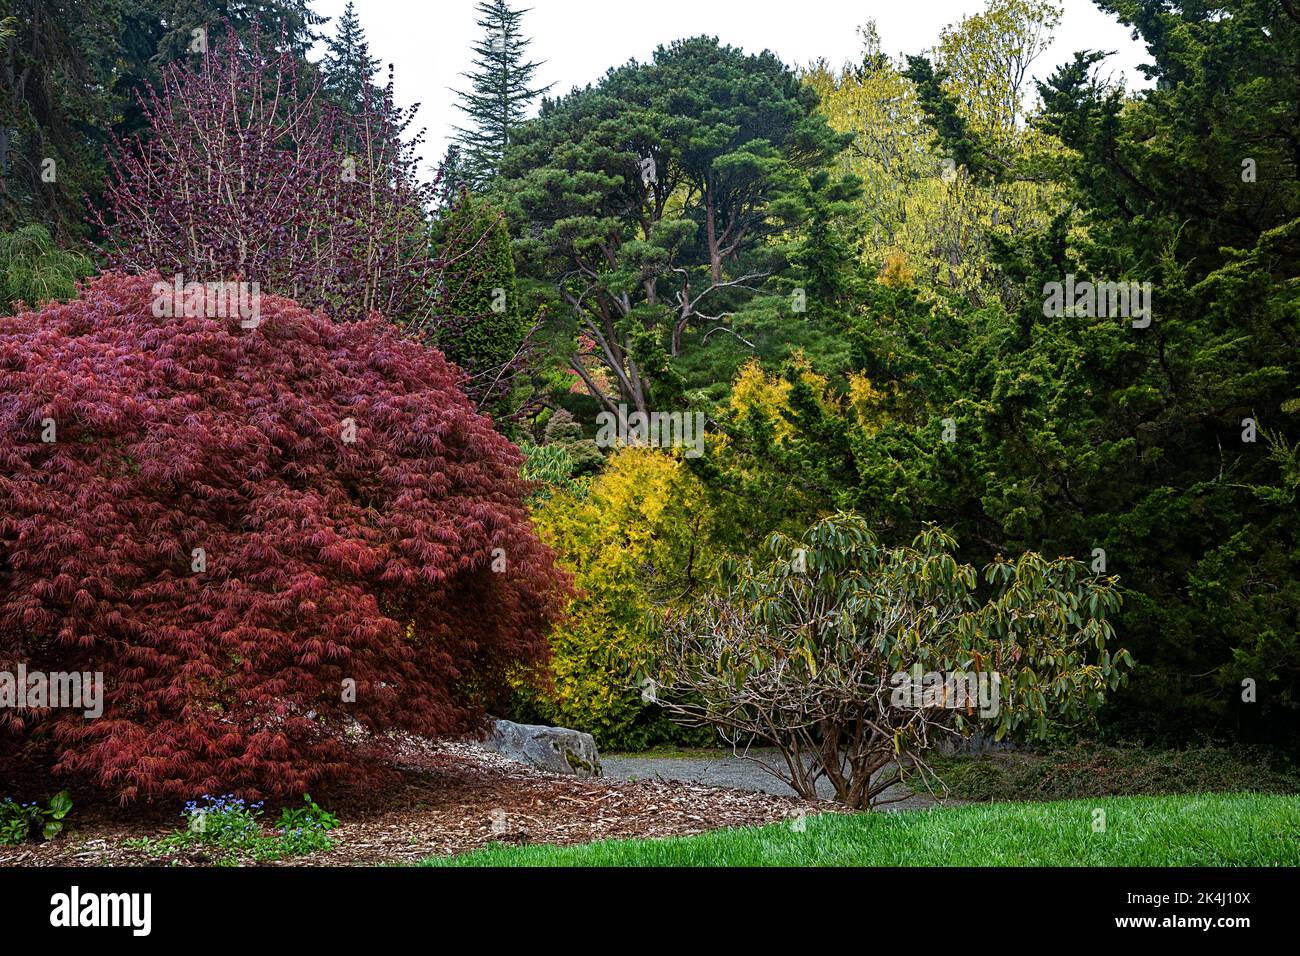 WA22136-00...WASHINGTON - farbenfrohe Blätter und neues Wachstum während der Frühjahrssaison in Kubota Gardens, einem Stadtpark von Seattle. Stockfoto